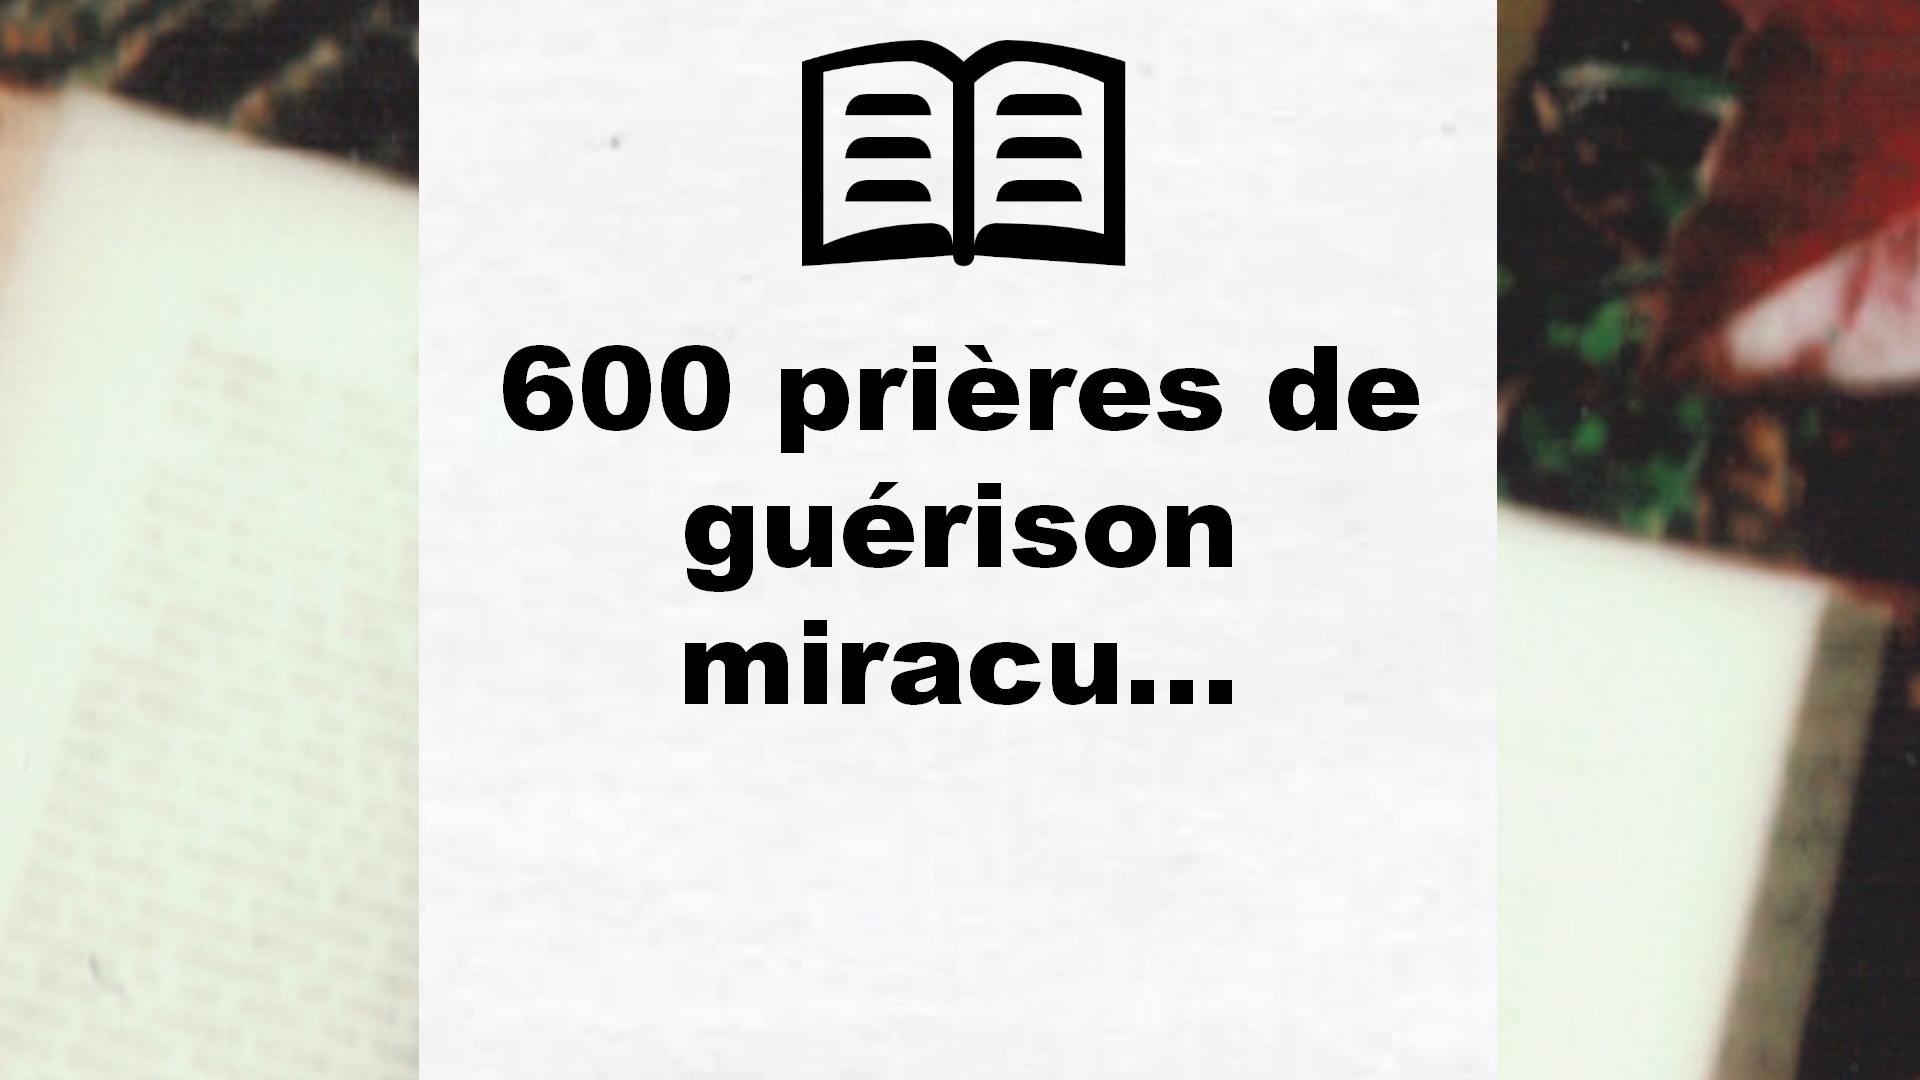 600 prières de guérison miracu… – Critique